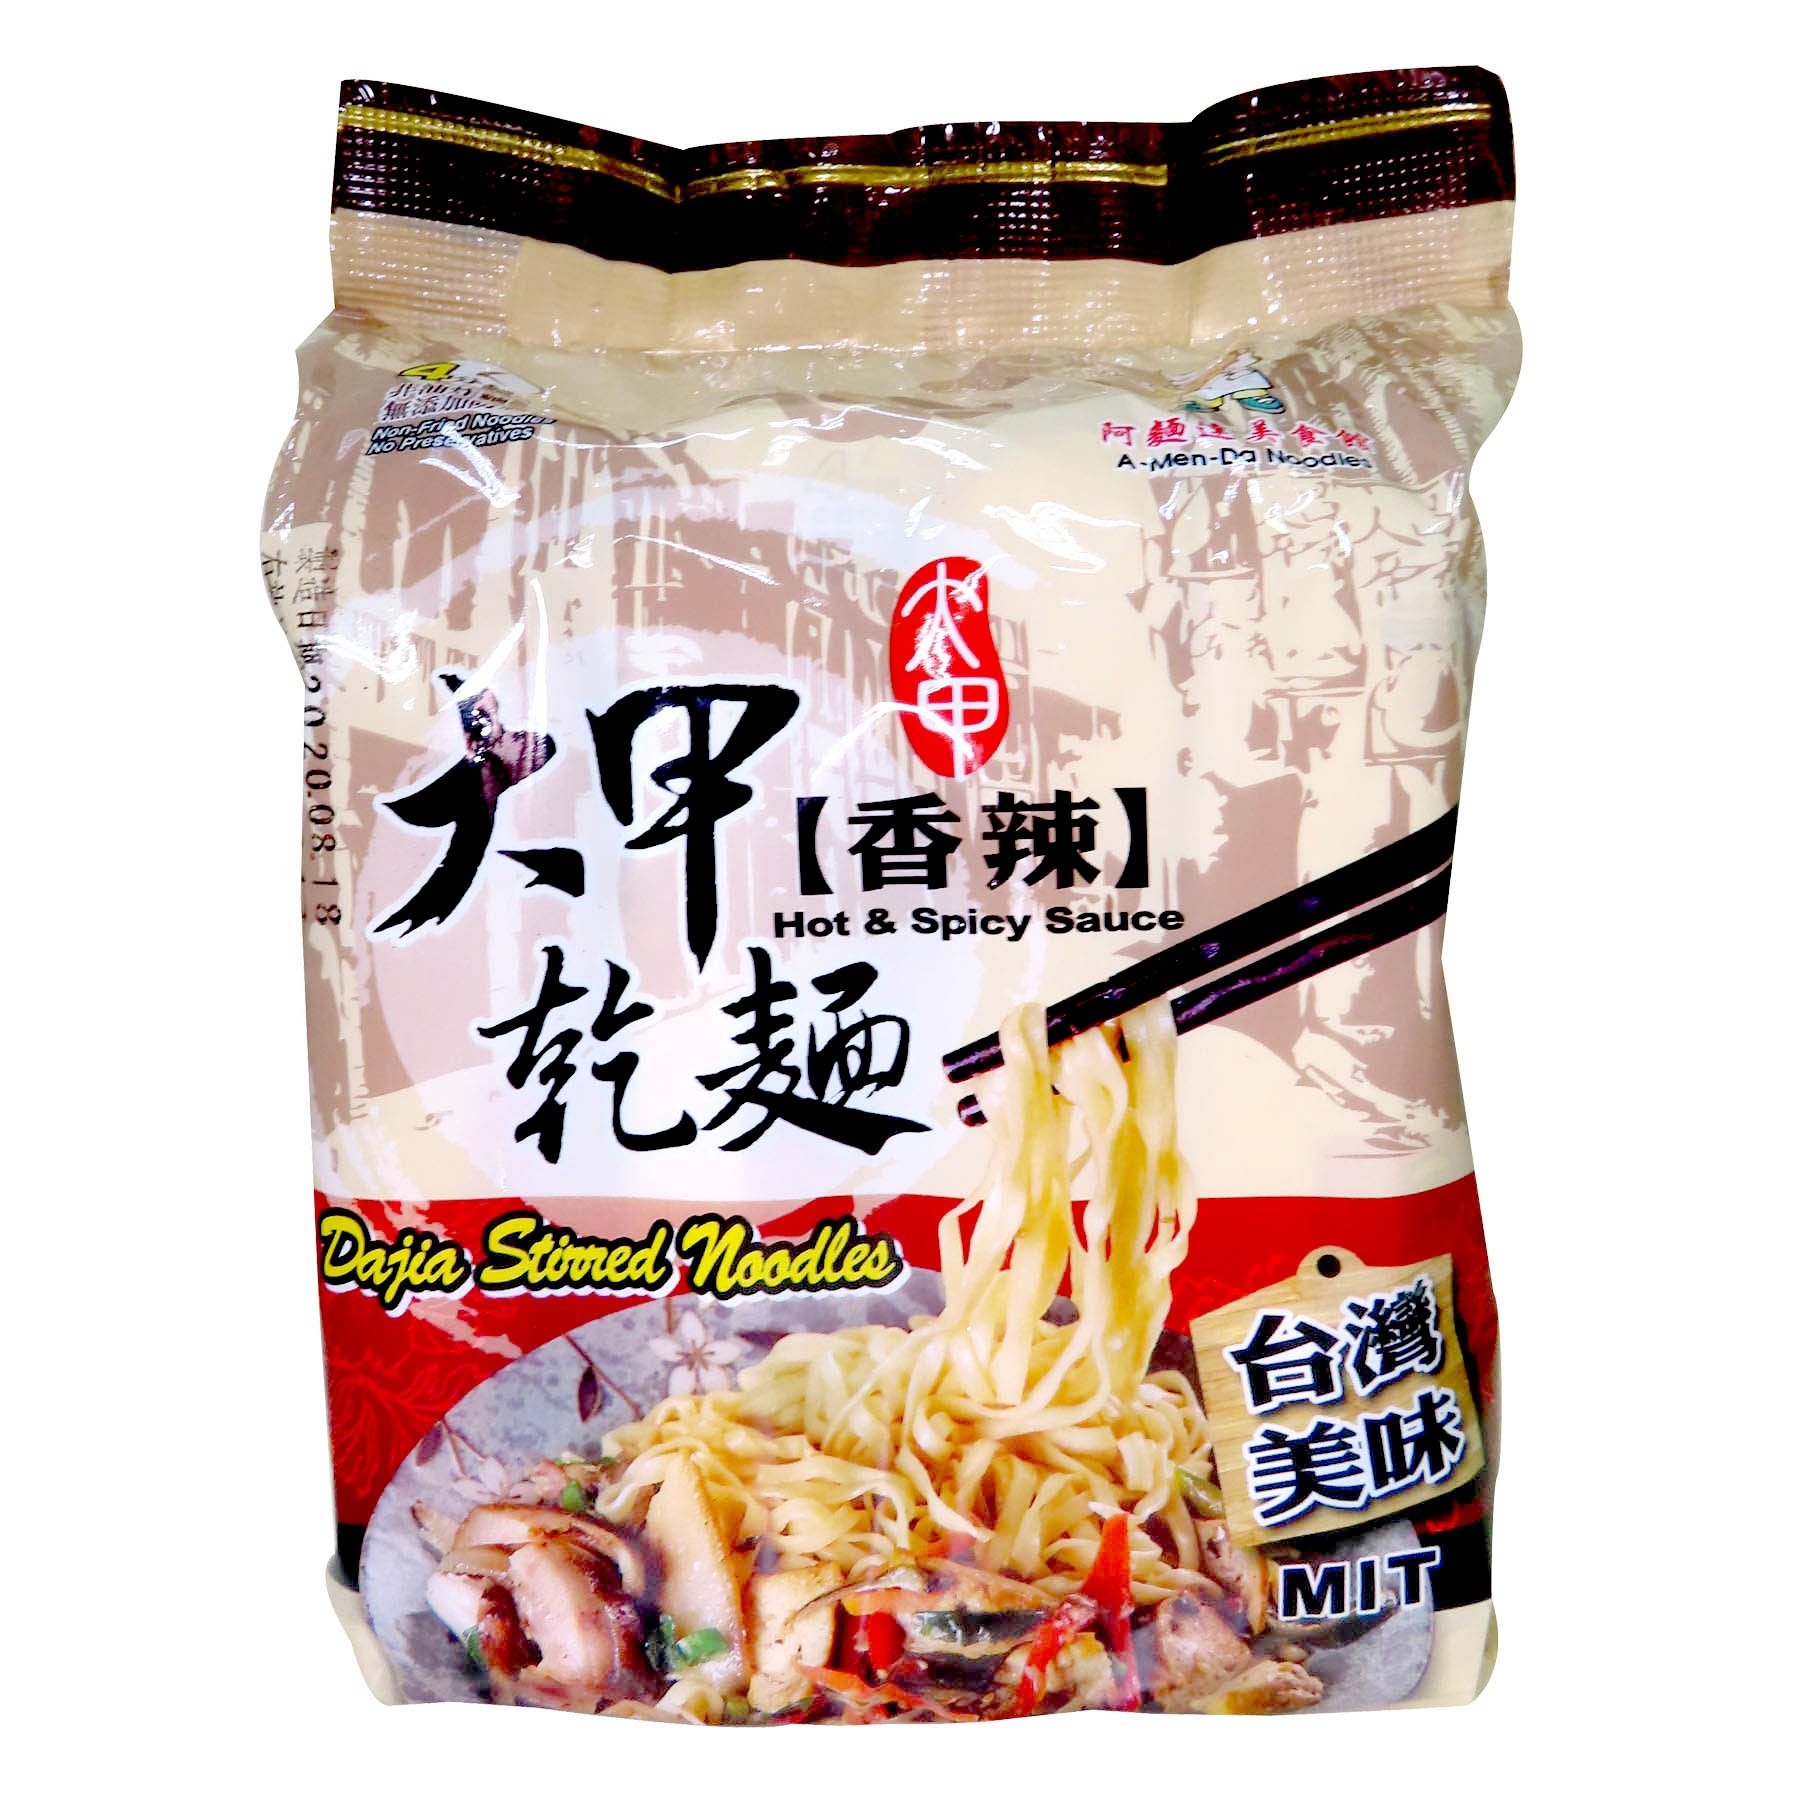 Image Dajia Hot & Spicy Noodle 大甲香辣干面 464grams